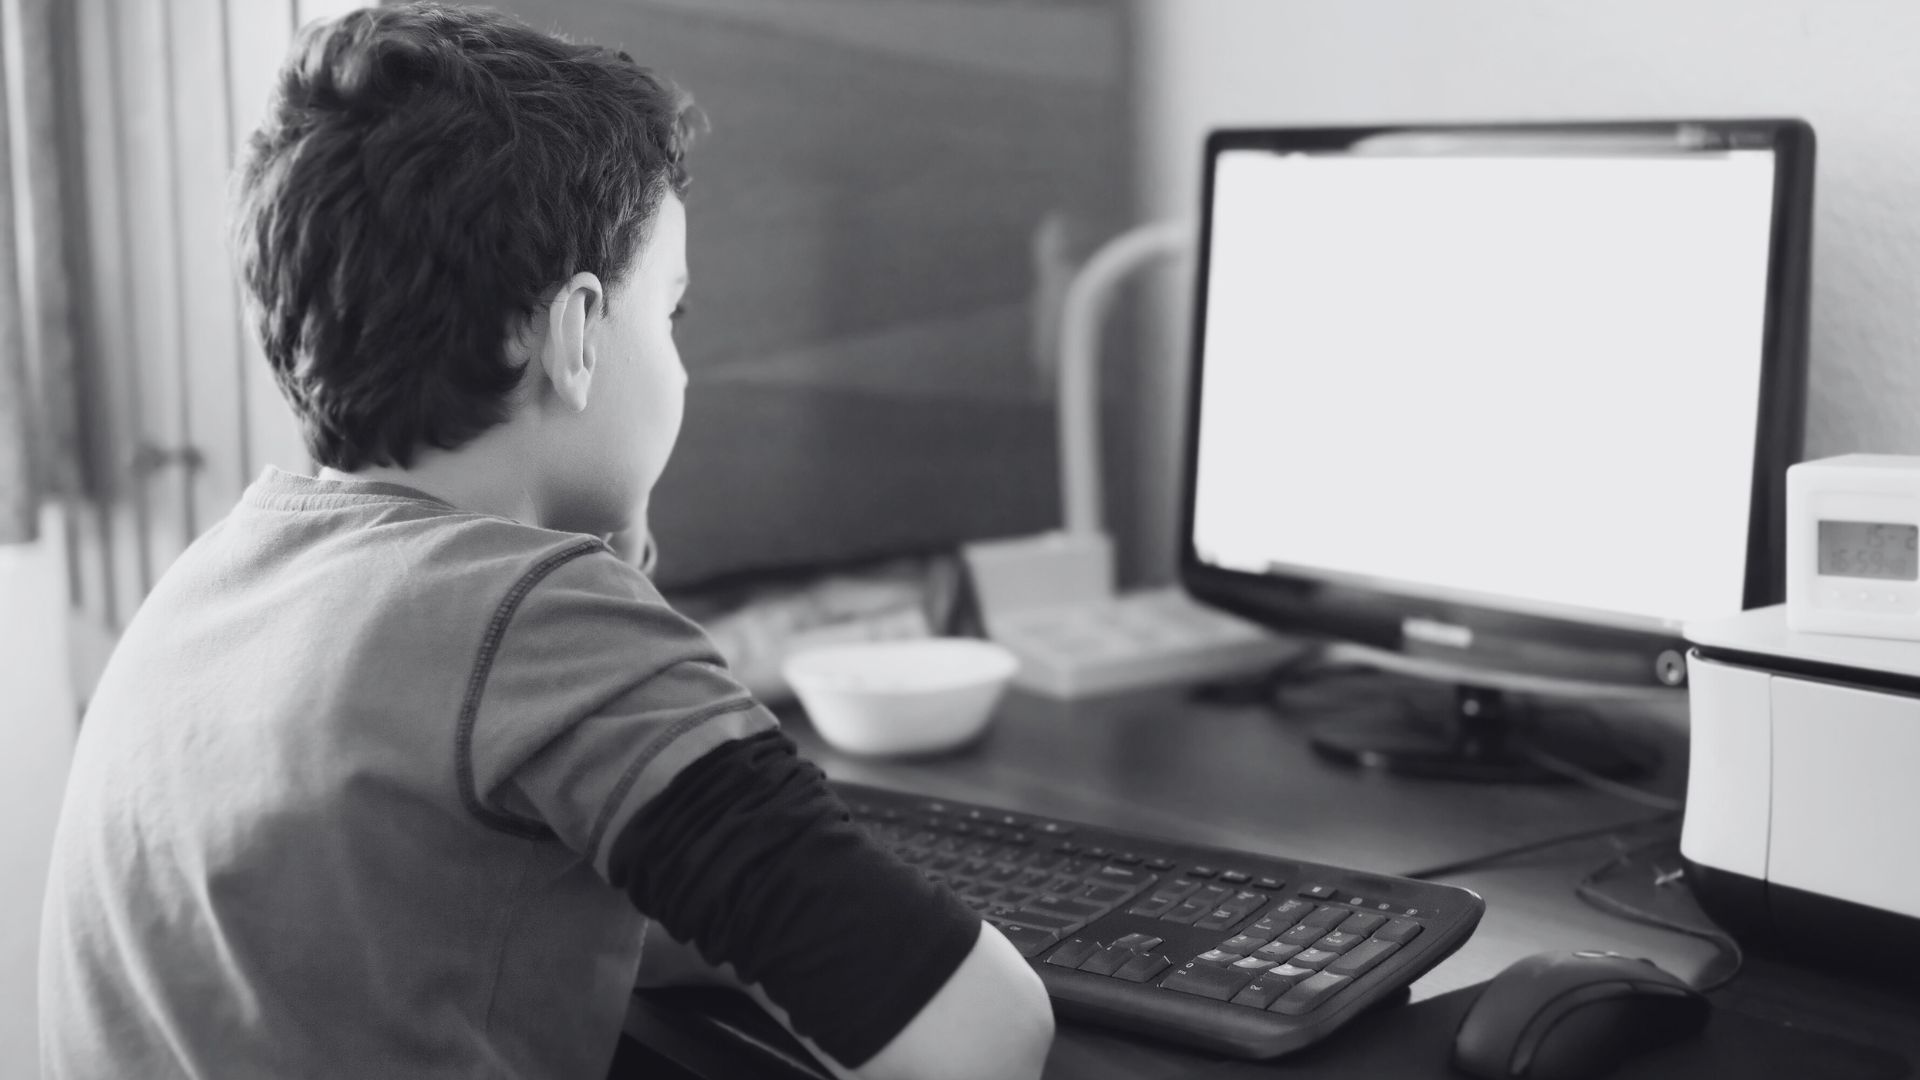 Imagem em preto e branco de um menino de costas olhando para o monitor de um computador. A imagem ilustra matéria sobre denúncia realizada no Habbo, jogo de simulação virtual.